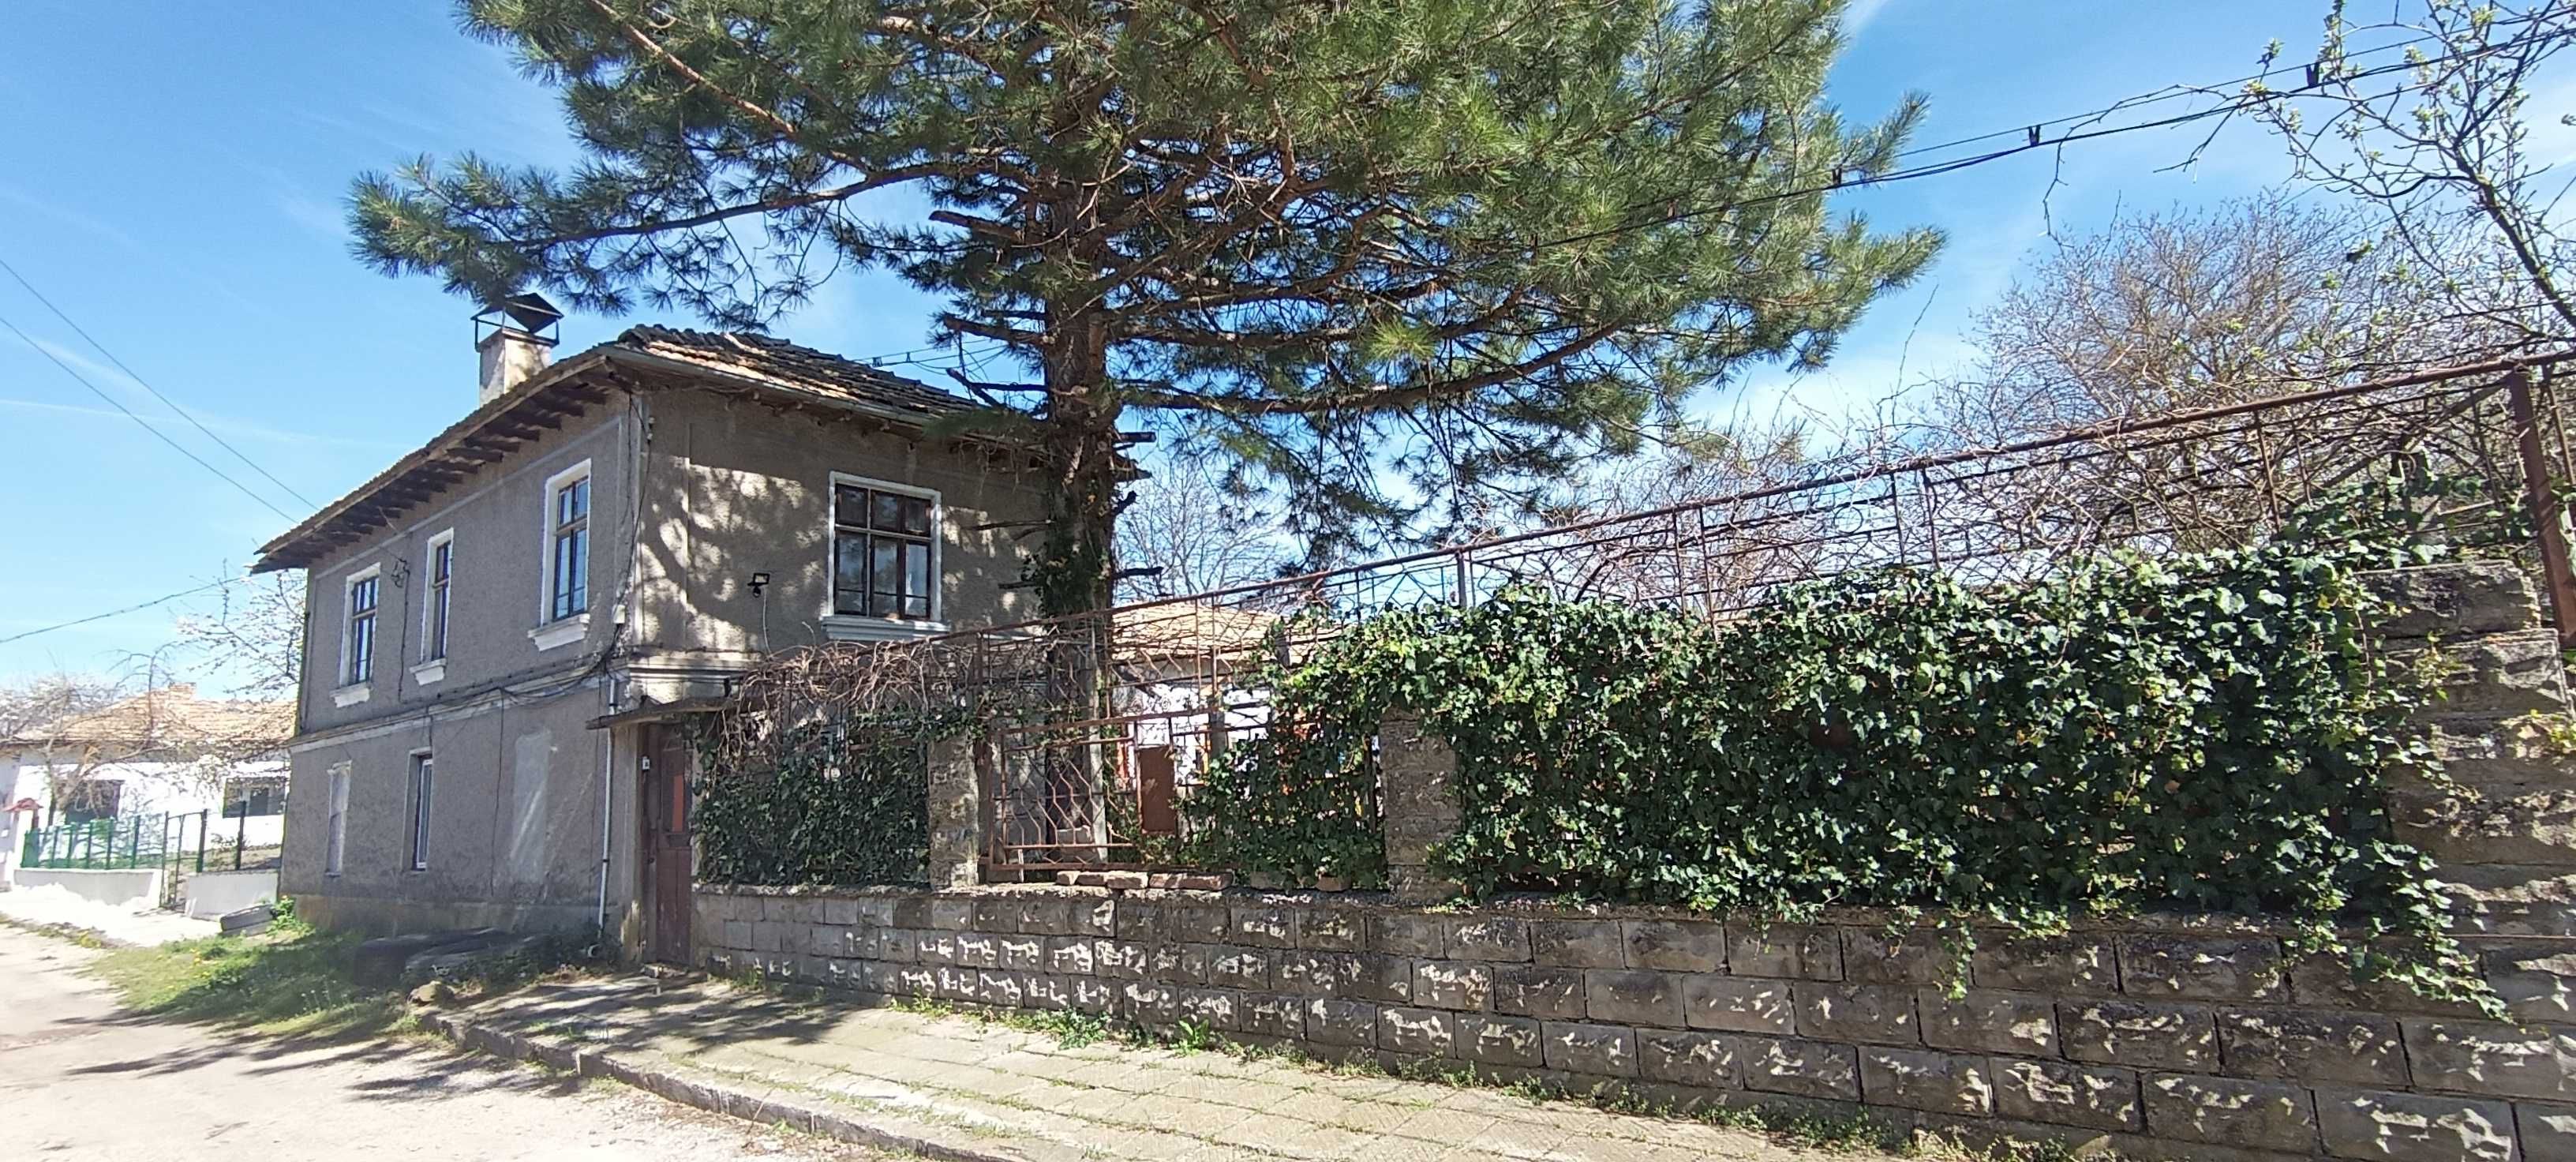 Къща в гр.Попово, кв Невски, двор 2867 кв м, допълнителни постройки